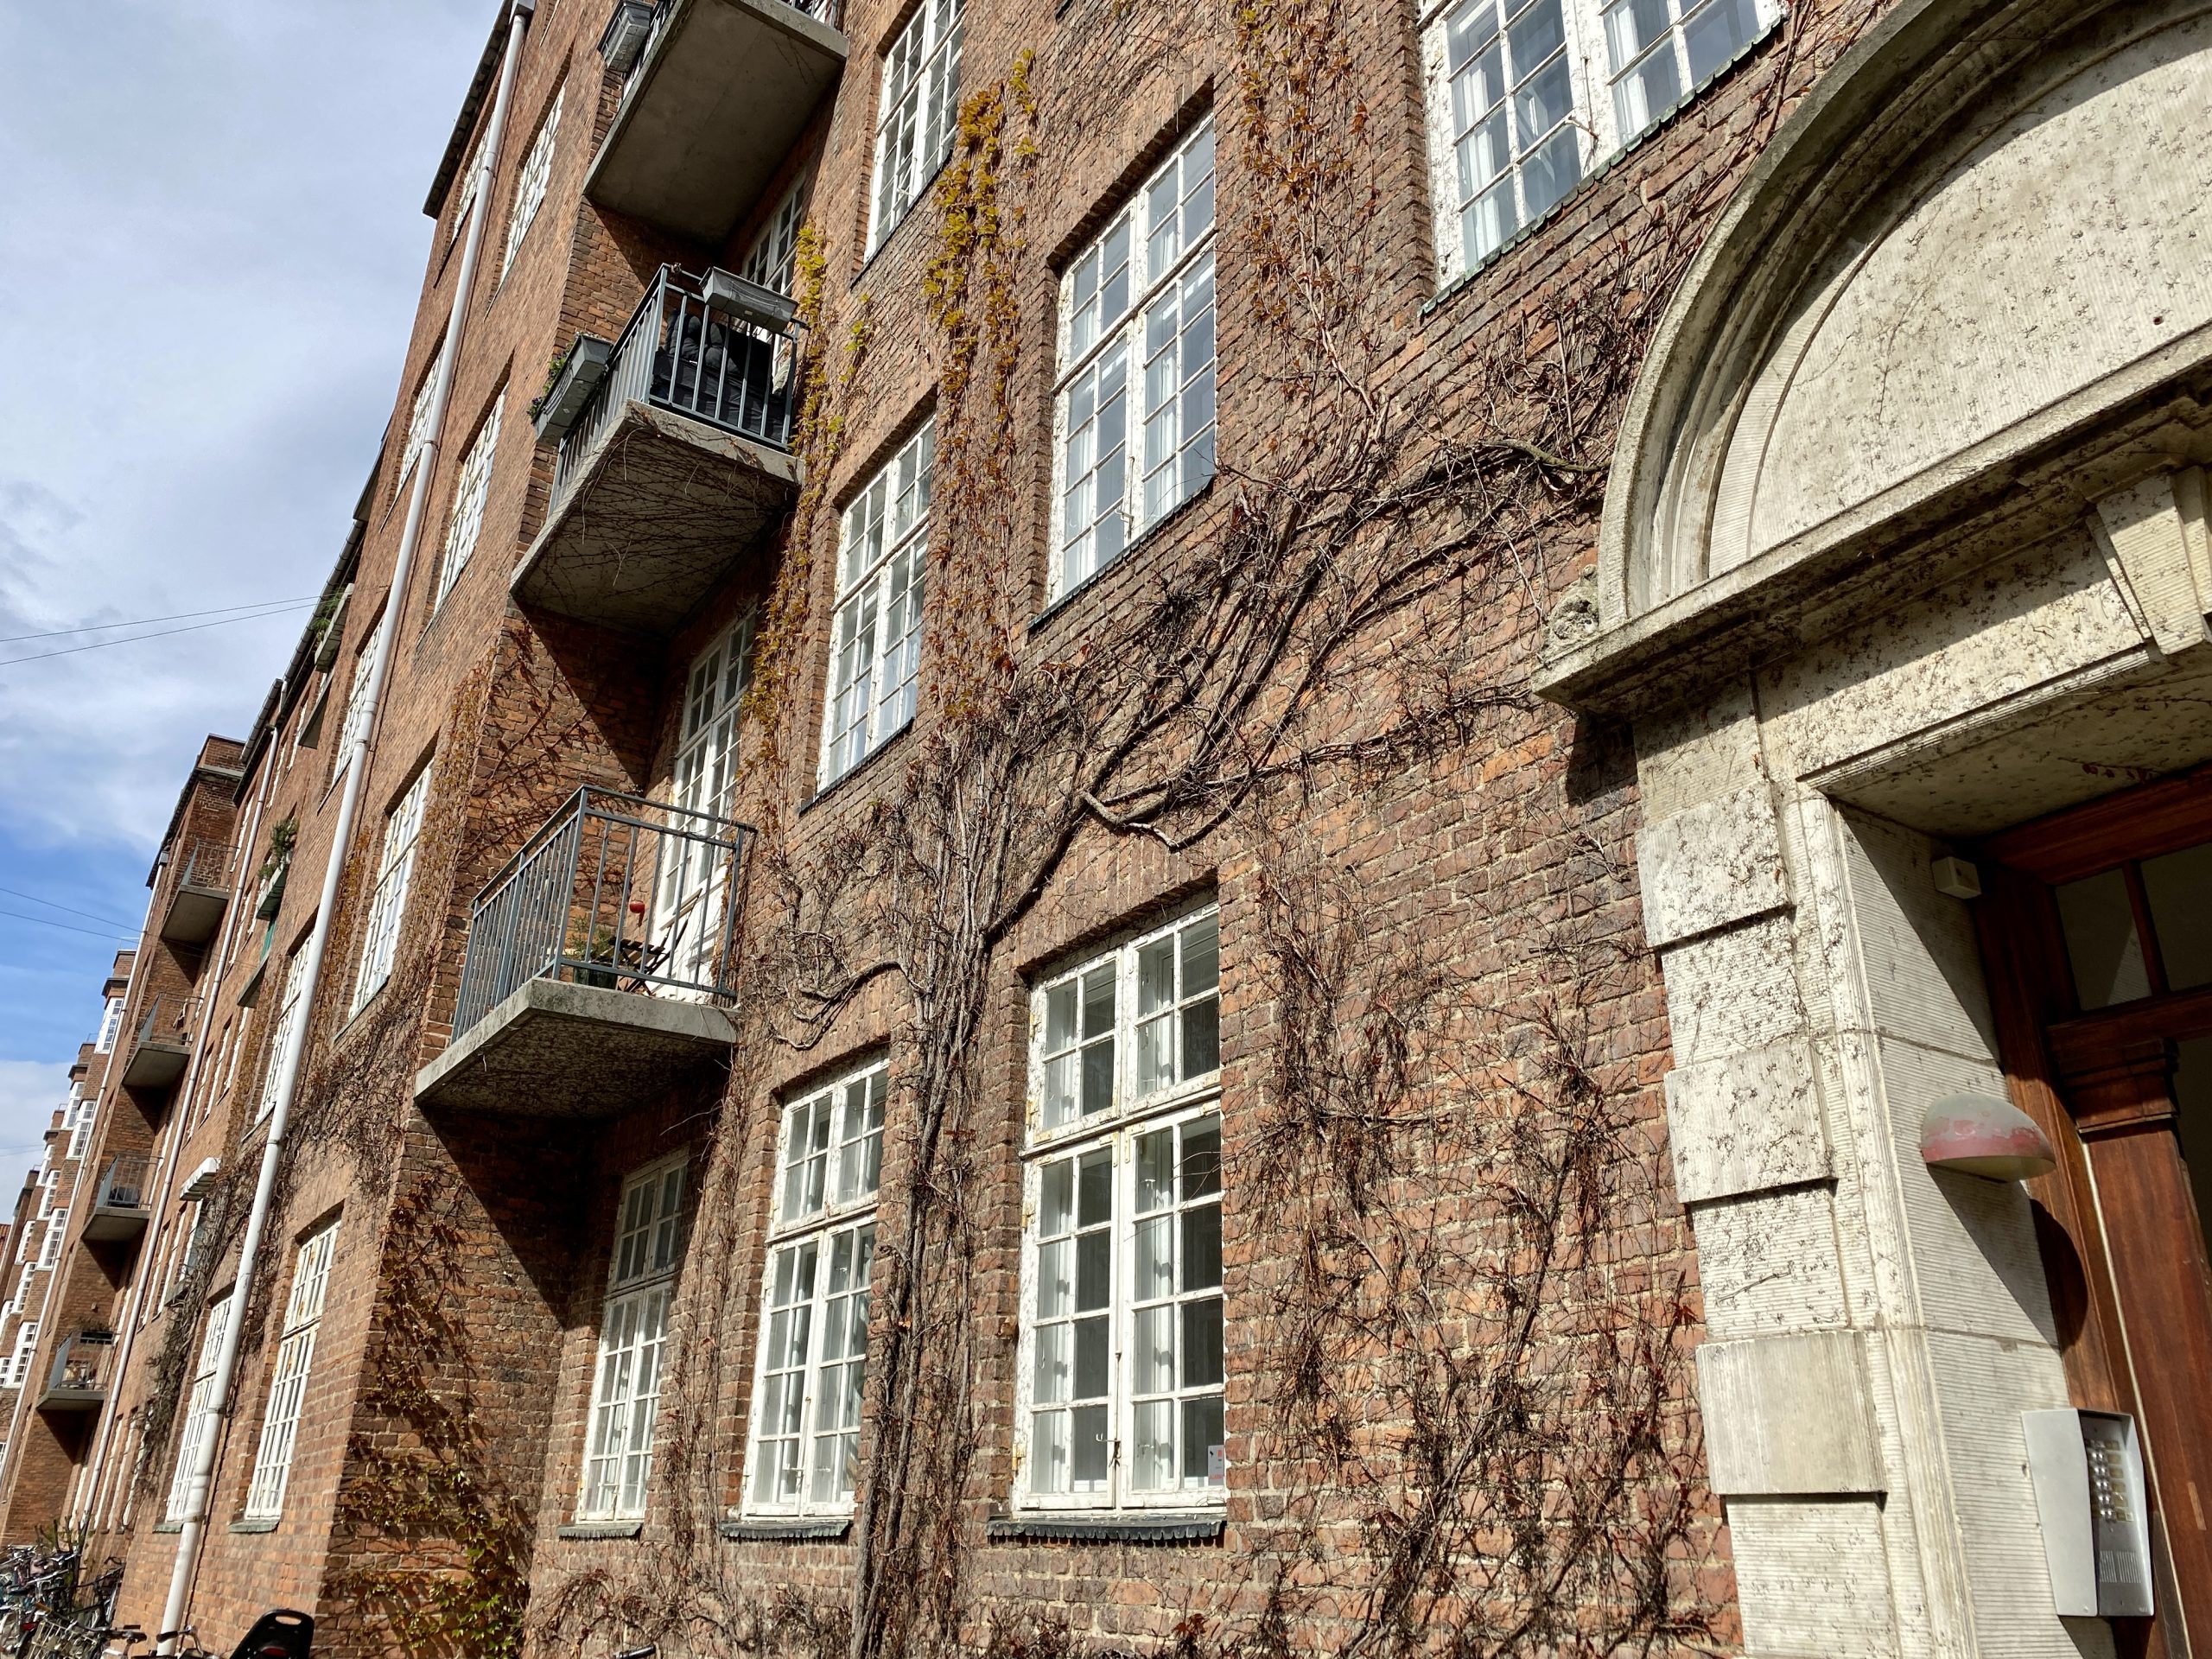 1516 – 5 værelseslejlighed på Østerbro